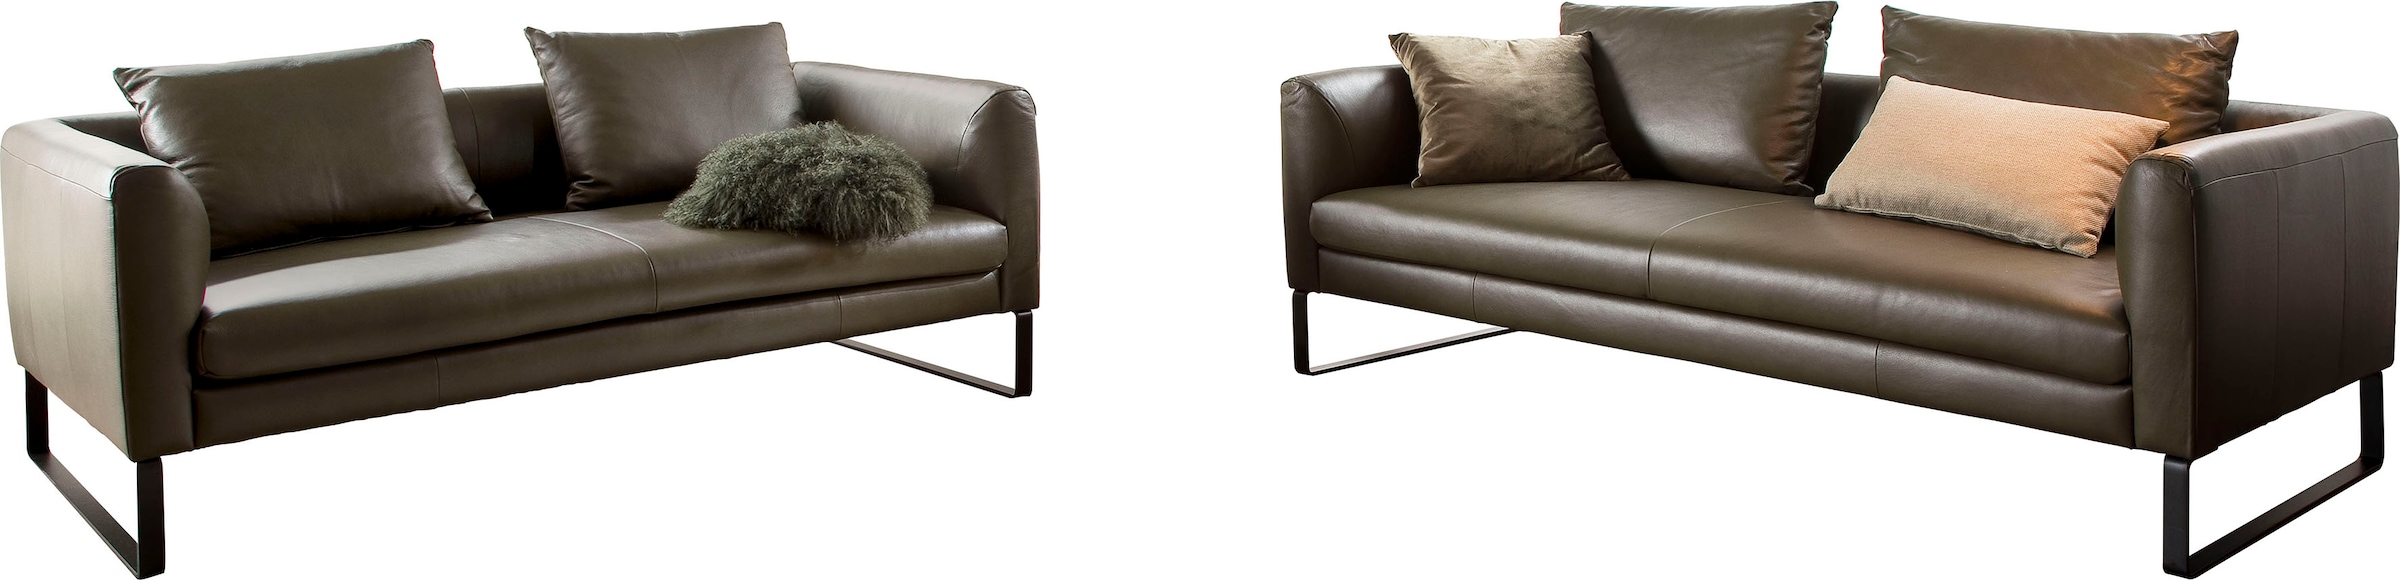 Sofa, Sofaset bestehend aus 2,5-Sitzer und 3-Sitzer